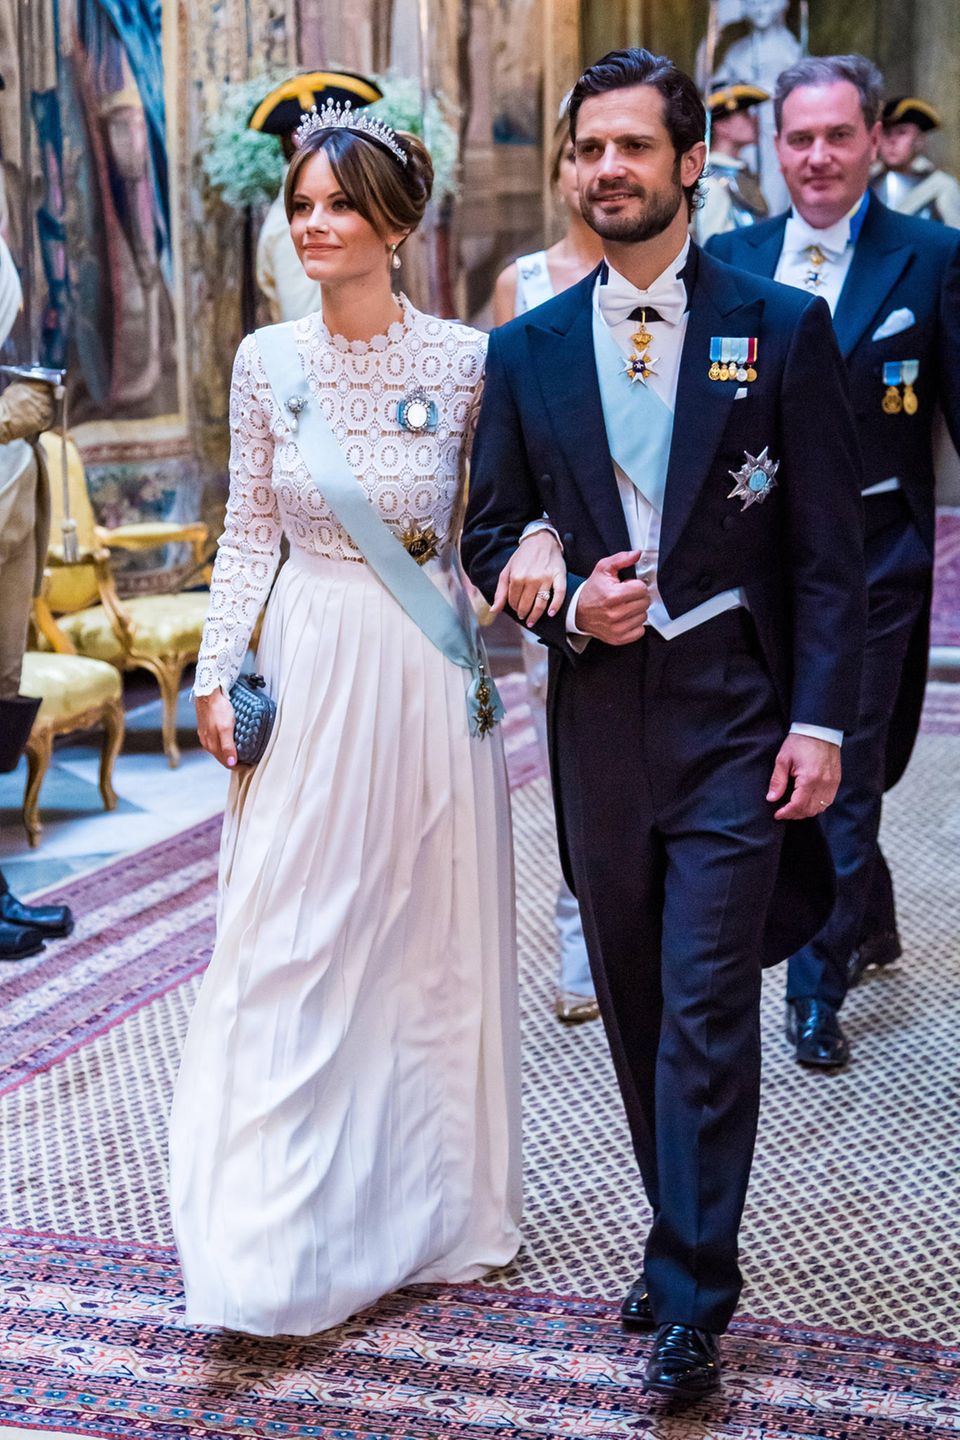 Gleiche Outfits der Royals: Prinzessin Sofia im weißen Kleid